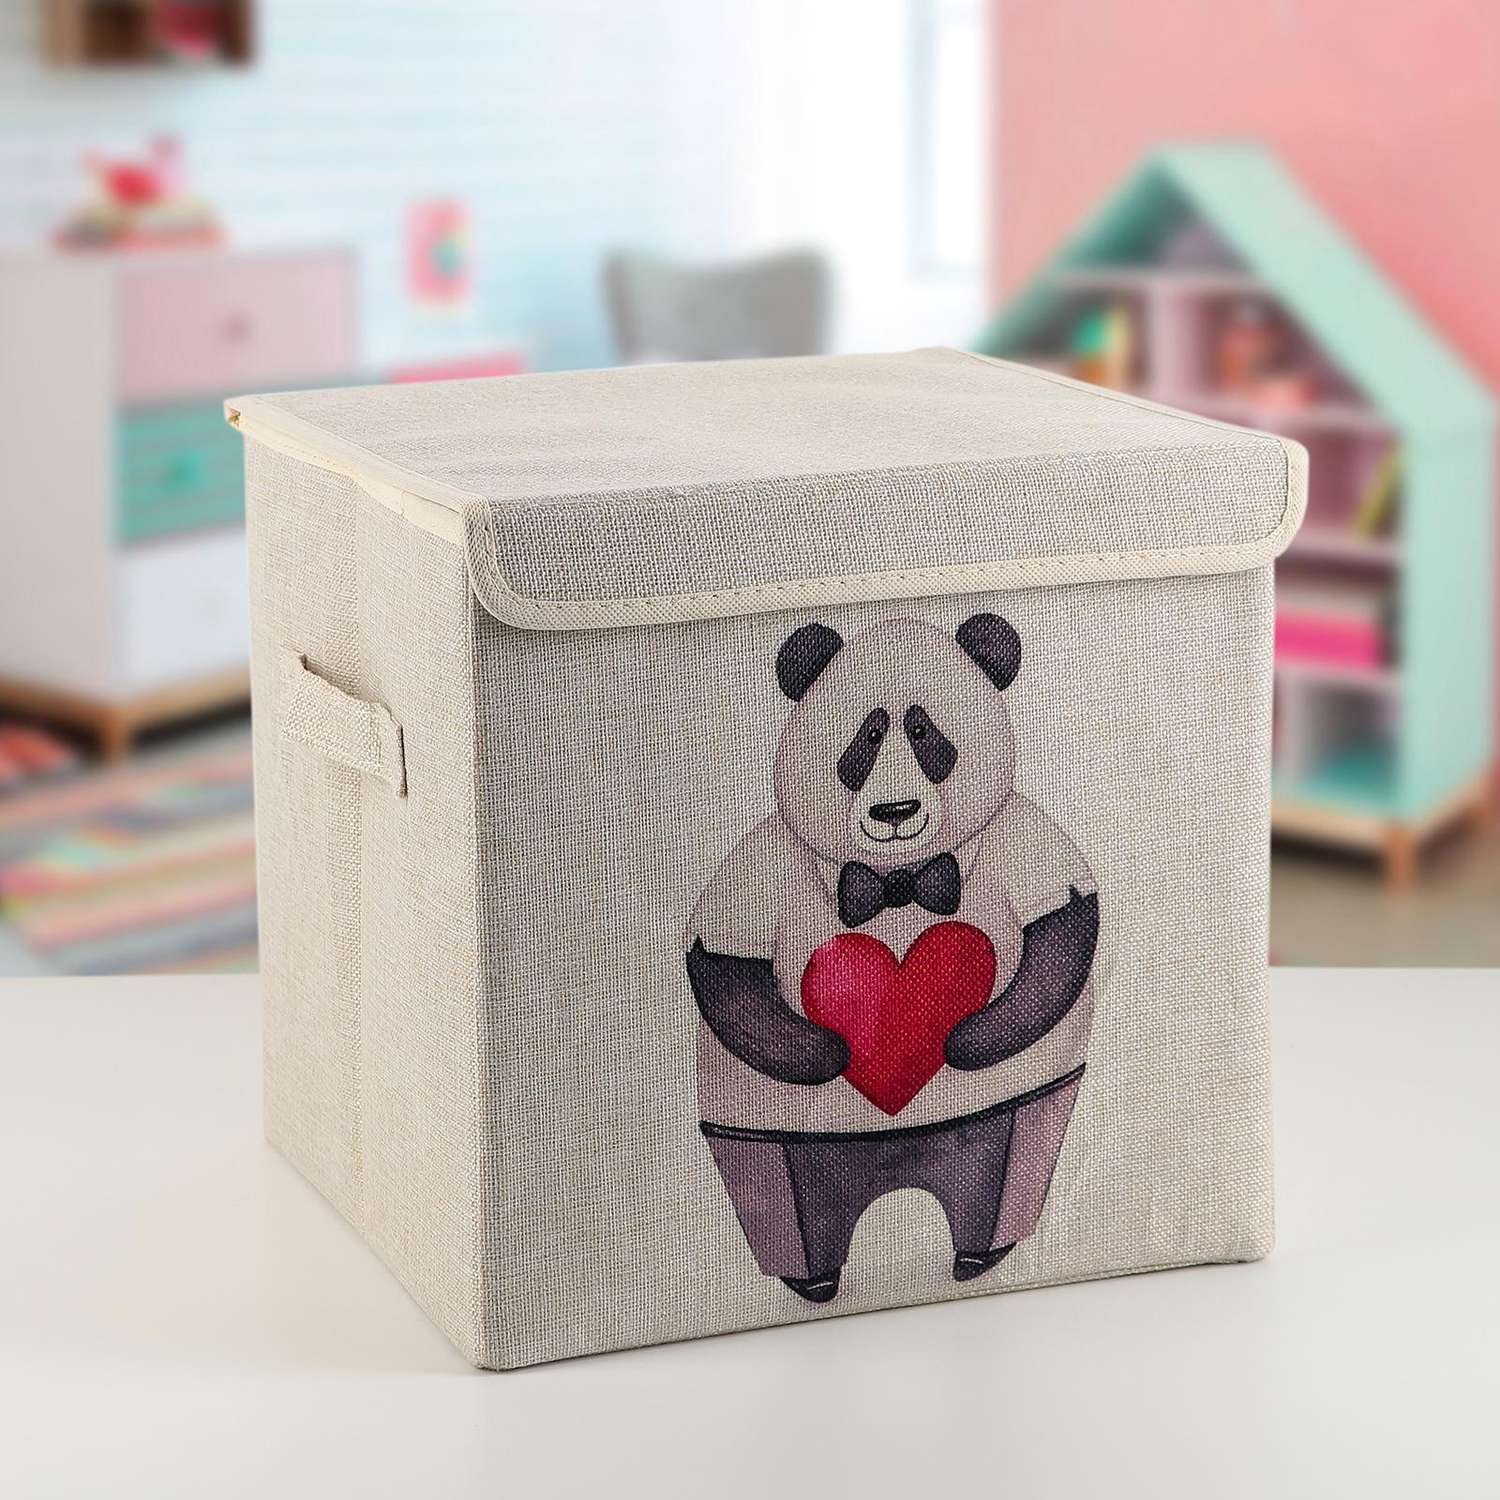 Короб Школа Талантов стеллажный для хранения с крышкой «Влюблённая панда» 30×30×28 5 см - фото 1